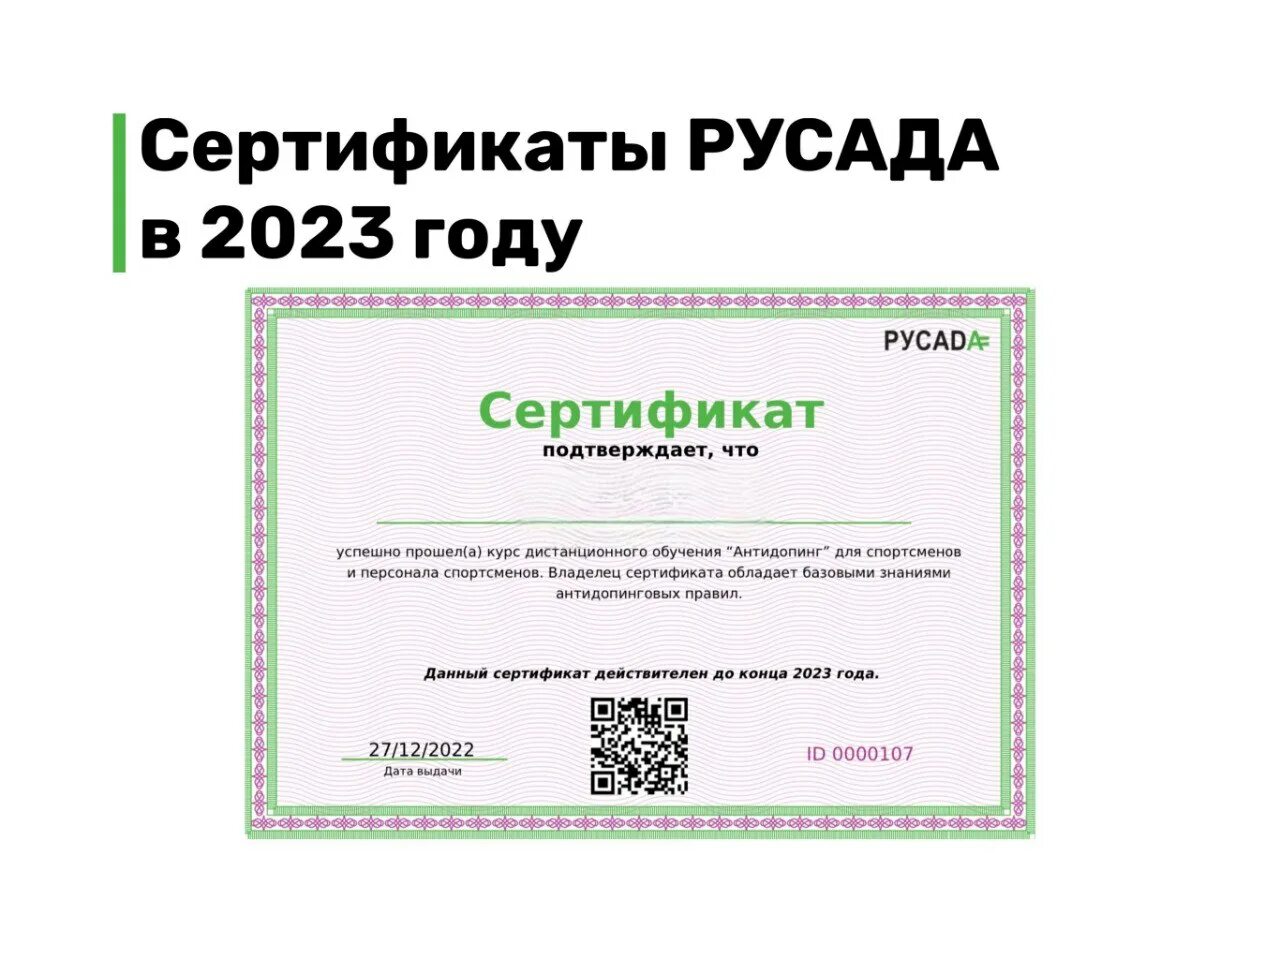 Сертификат РУСАДА 2023. Сертификат РУСАДА антидопинг 2023. Сертификаты 2023 года. Сертификат РУСАДА антидопинг. Пройти антидопинговый тест на русада